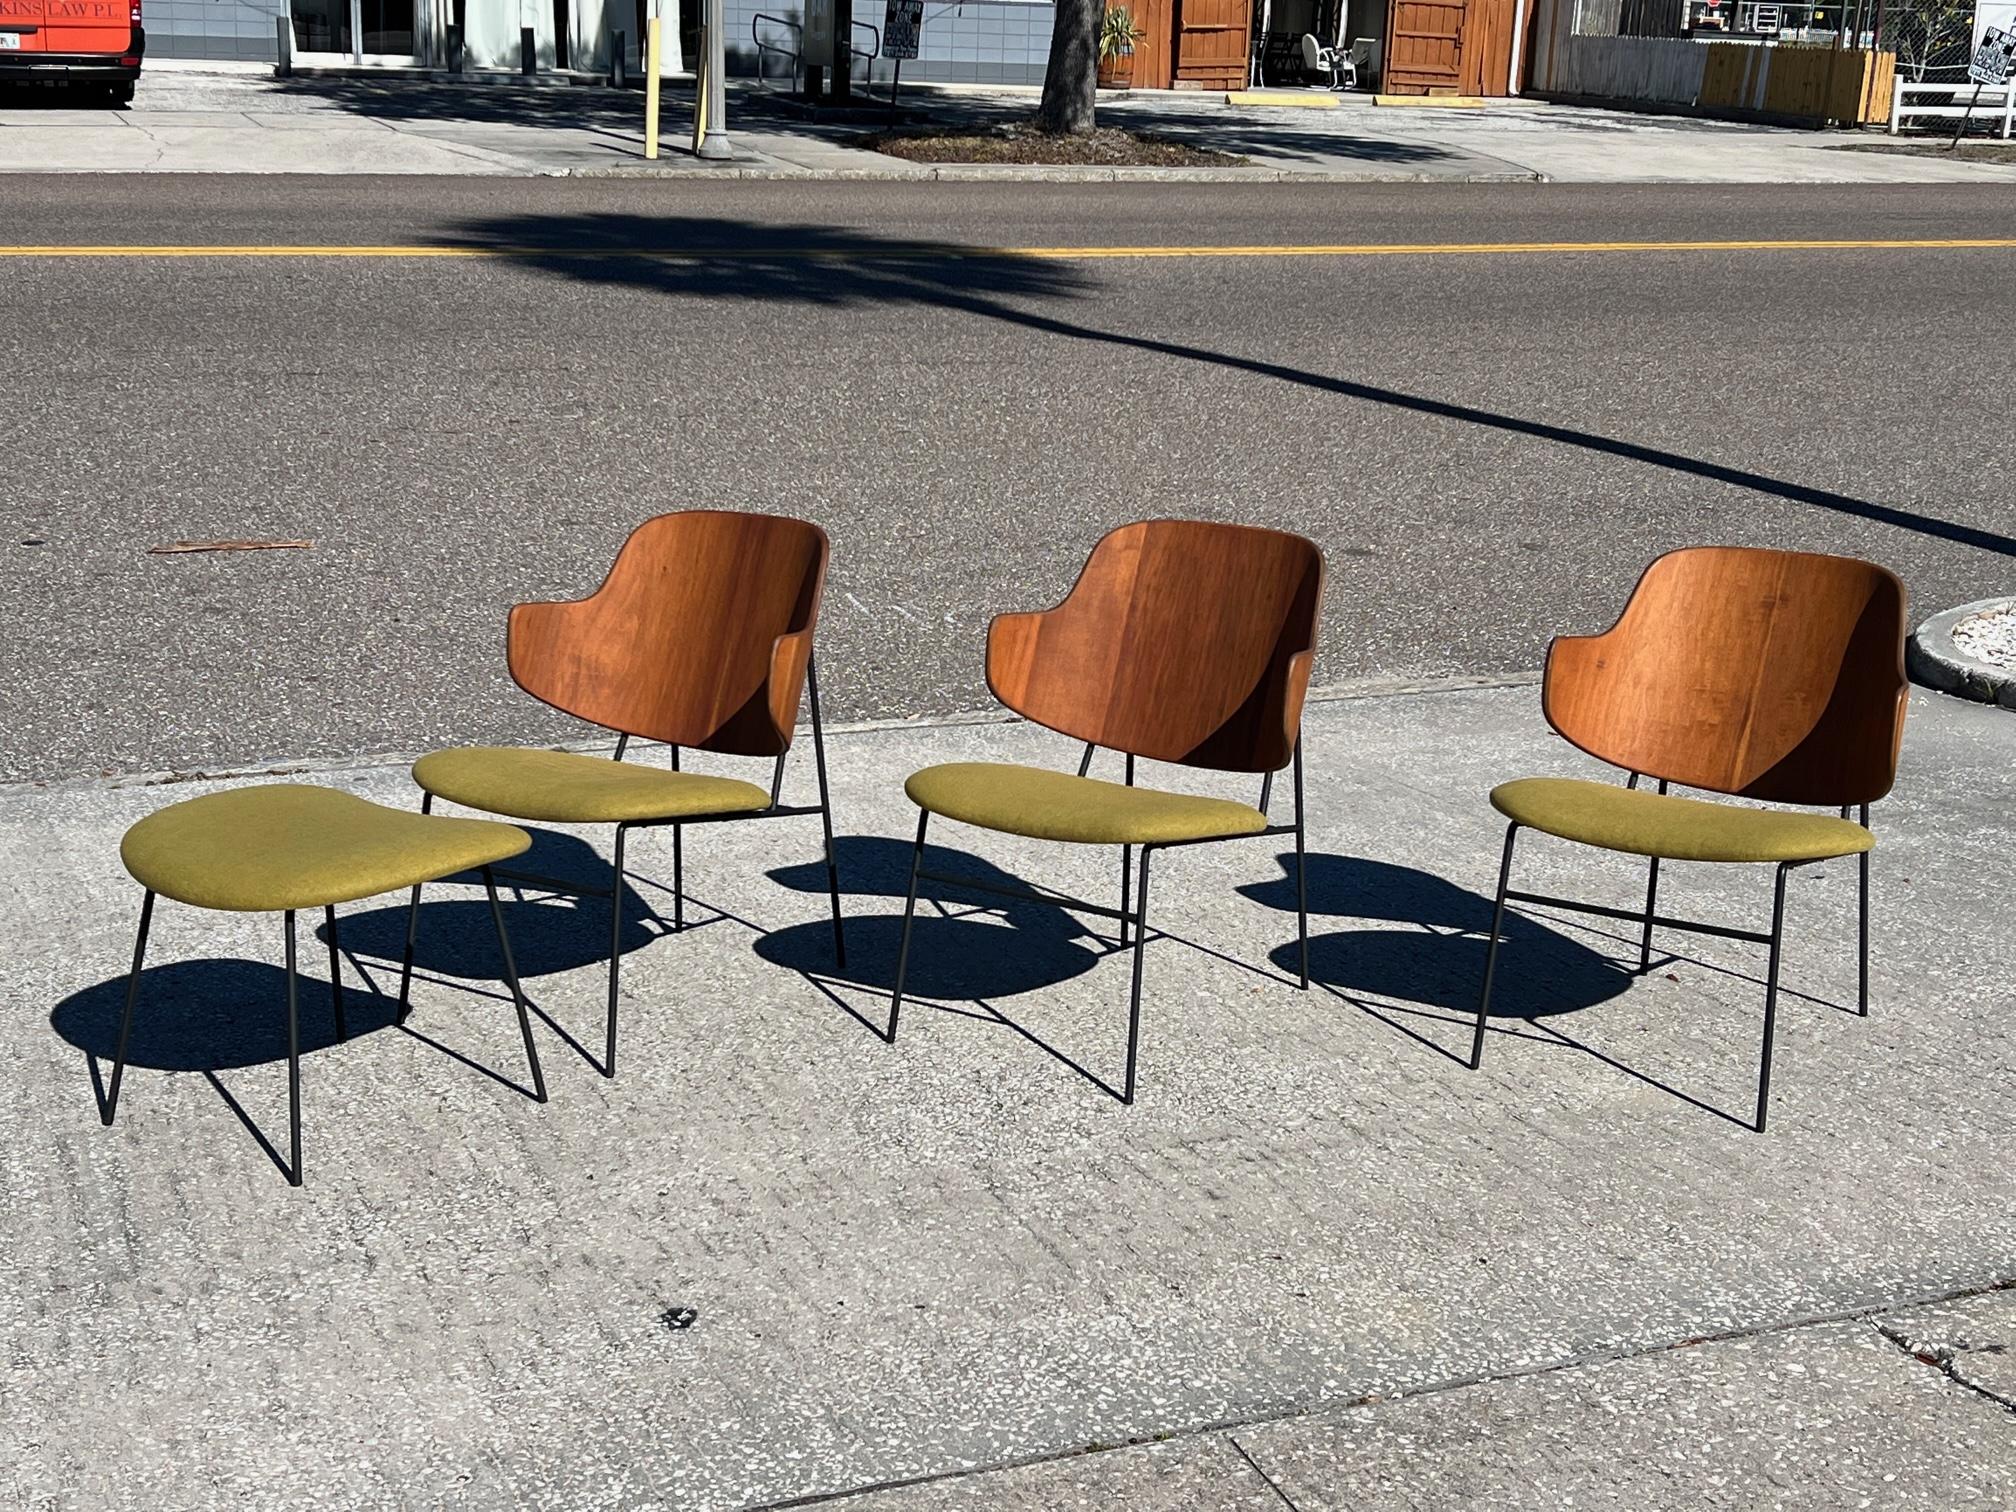 Un superbe ensemble de quatre pièces - trois chaises longues et un ottoman de Kofod Larsen. Fabriqué au Danemark, vers les années 1950. Entièrement restauré, et retapissé dans un tissu d'époque.